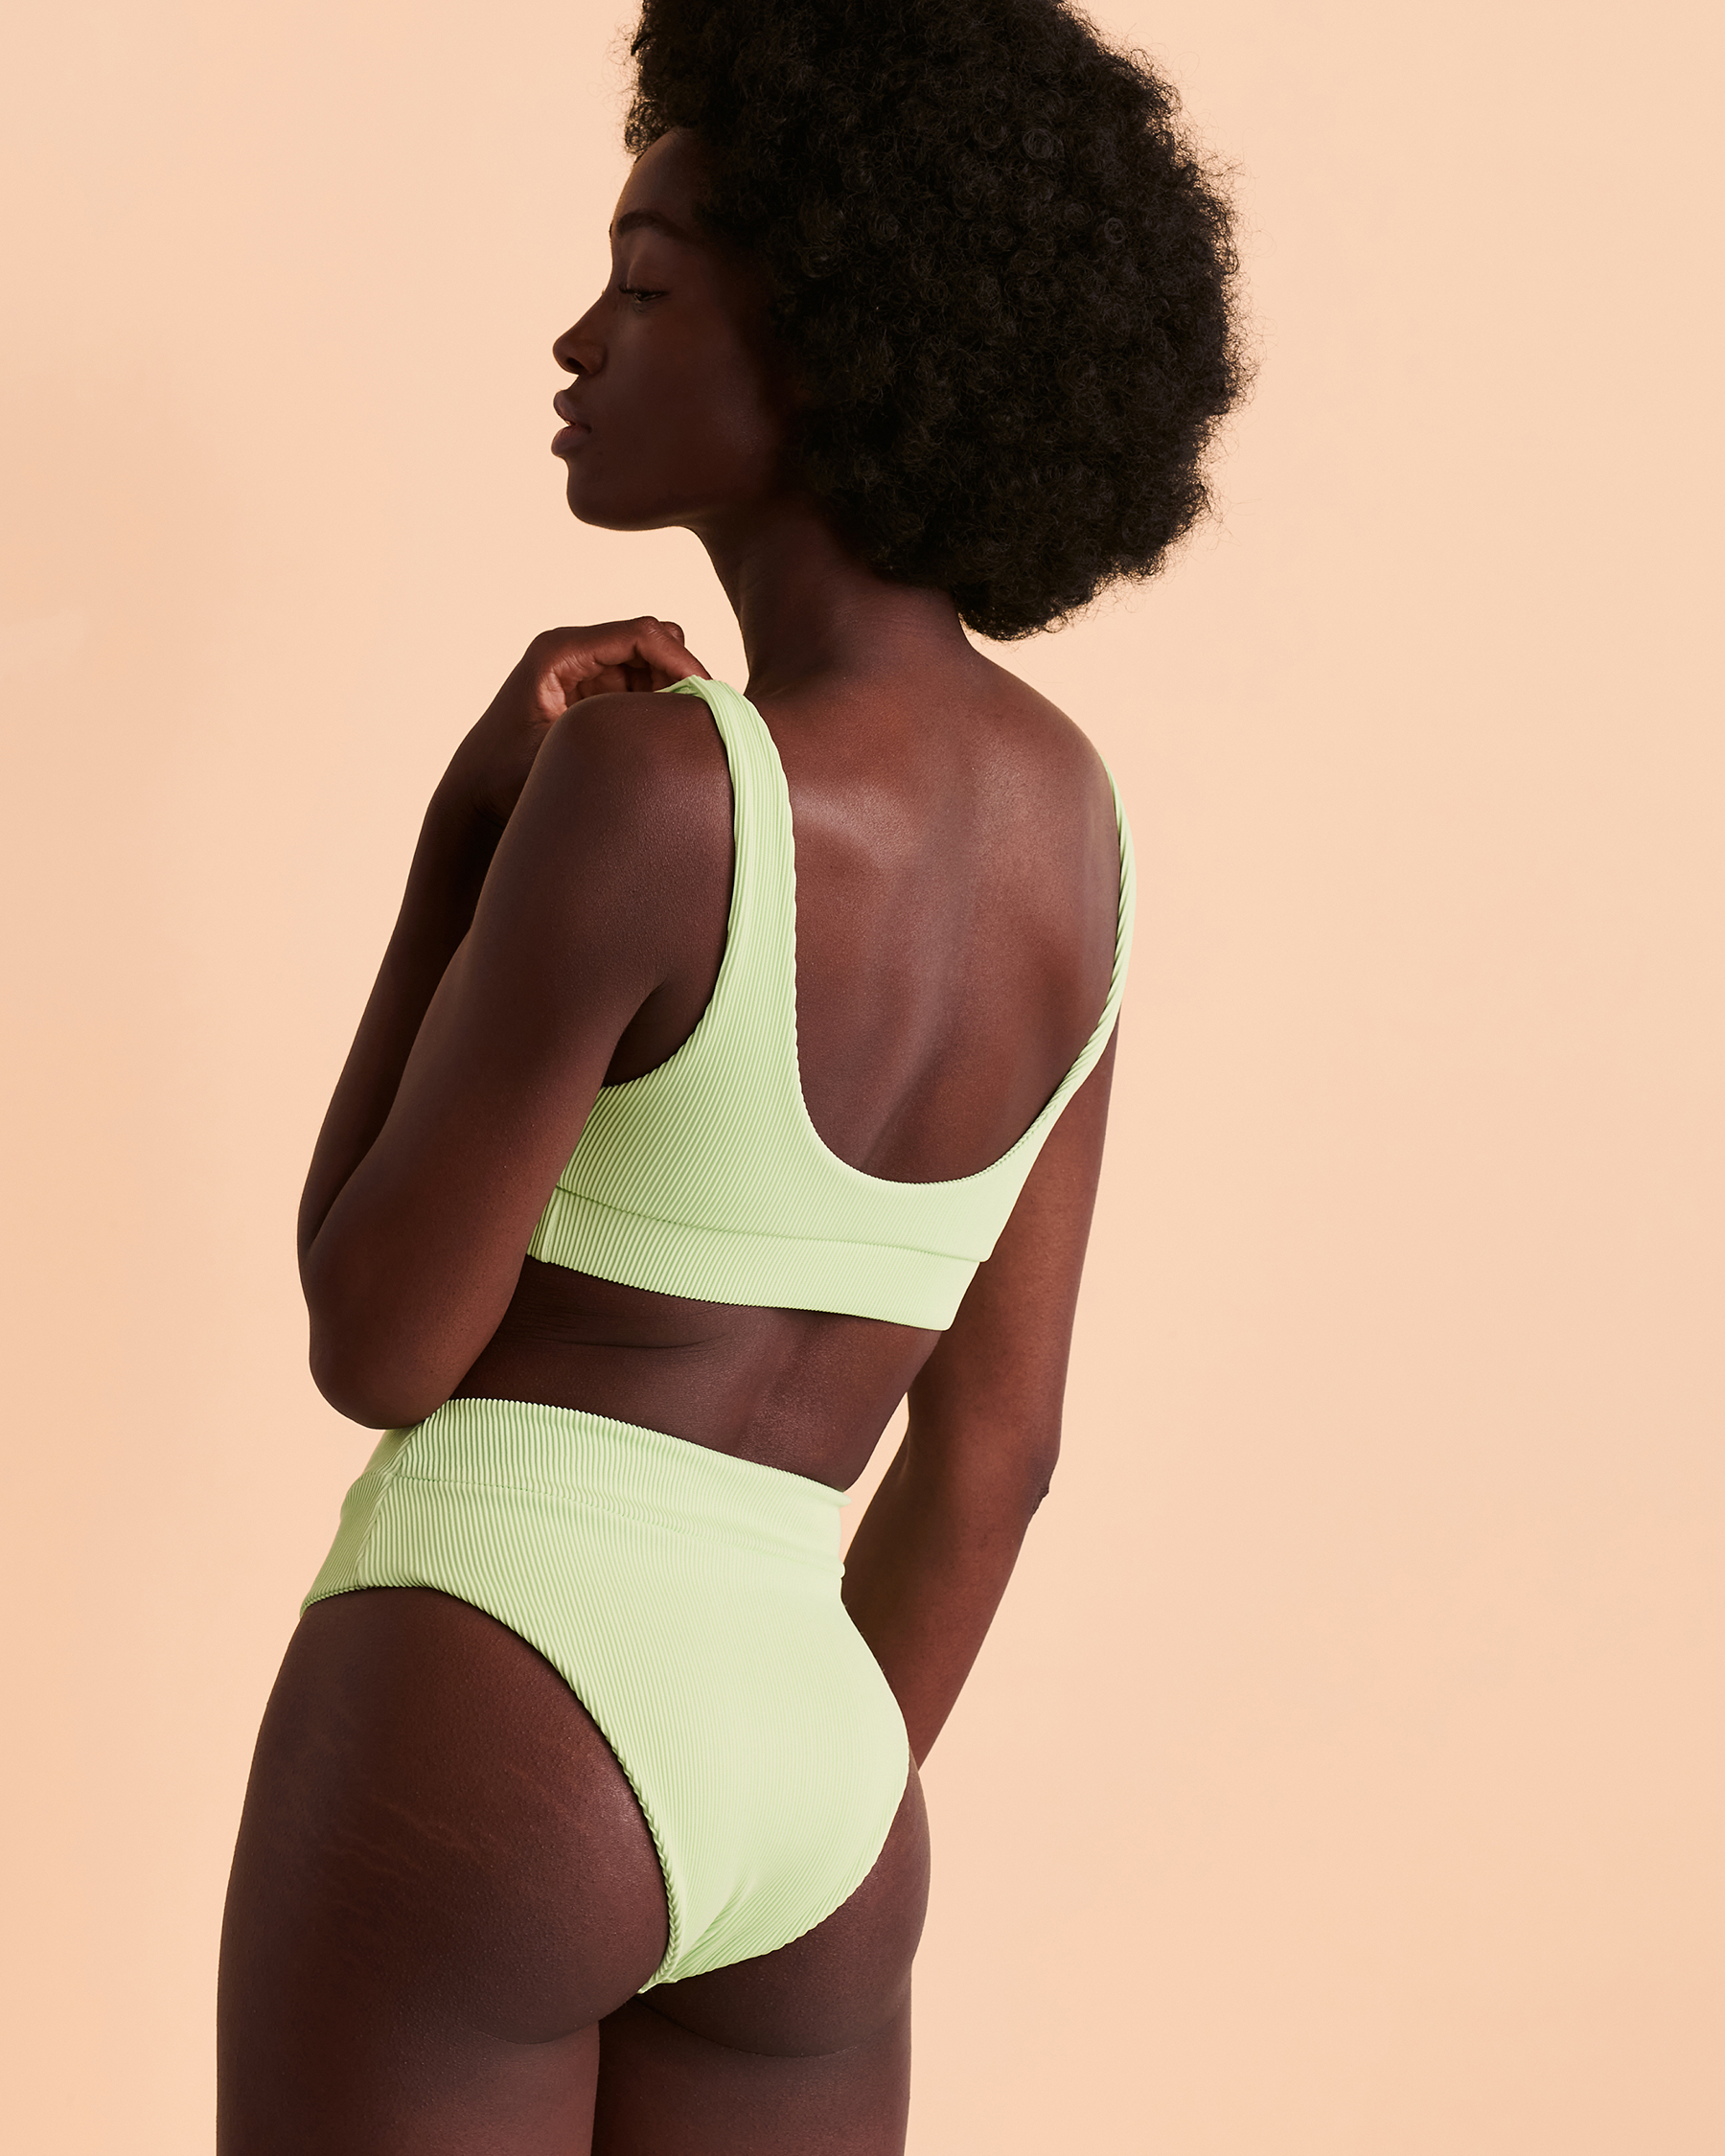 KULANI KINIS NEON LIME Bralette Bikini Top Neon lime TOP125NLR - View2